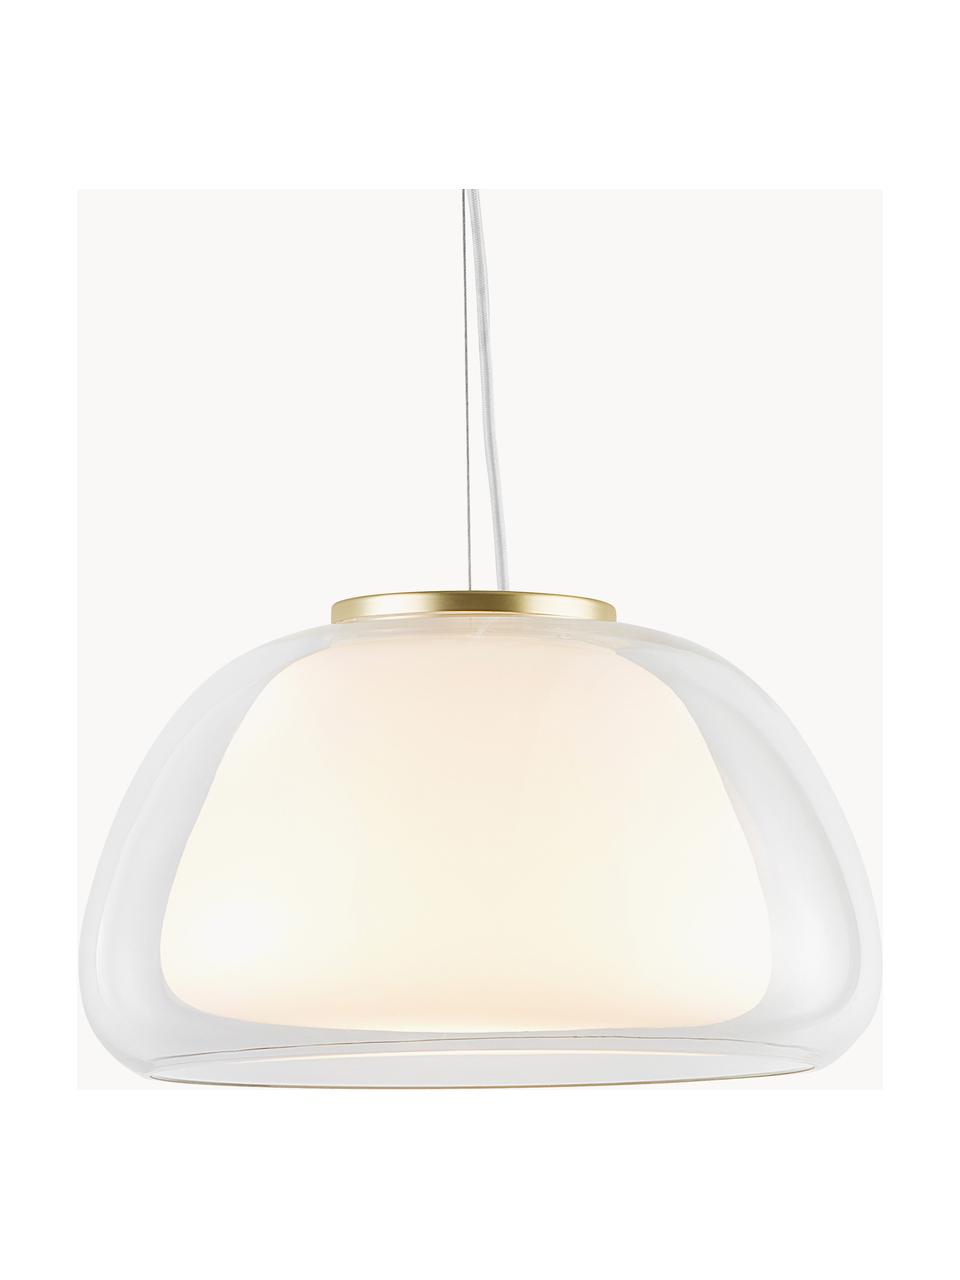 Lampada a sospensione in vetro Jelly, Paralume: vetro, Decorazione: metallo, Trasparente, bianco, Ø 39 x Alt. 23 cm